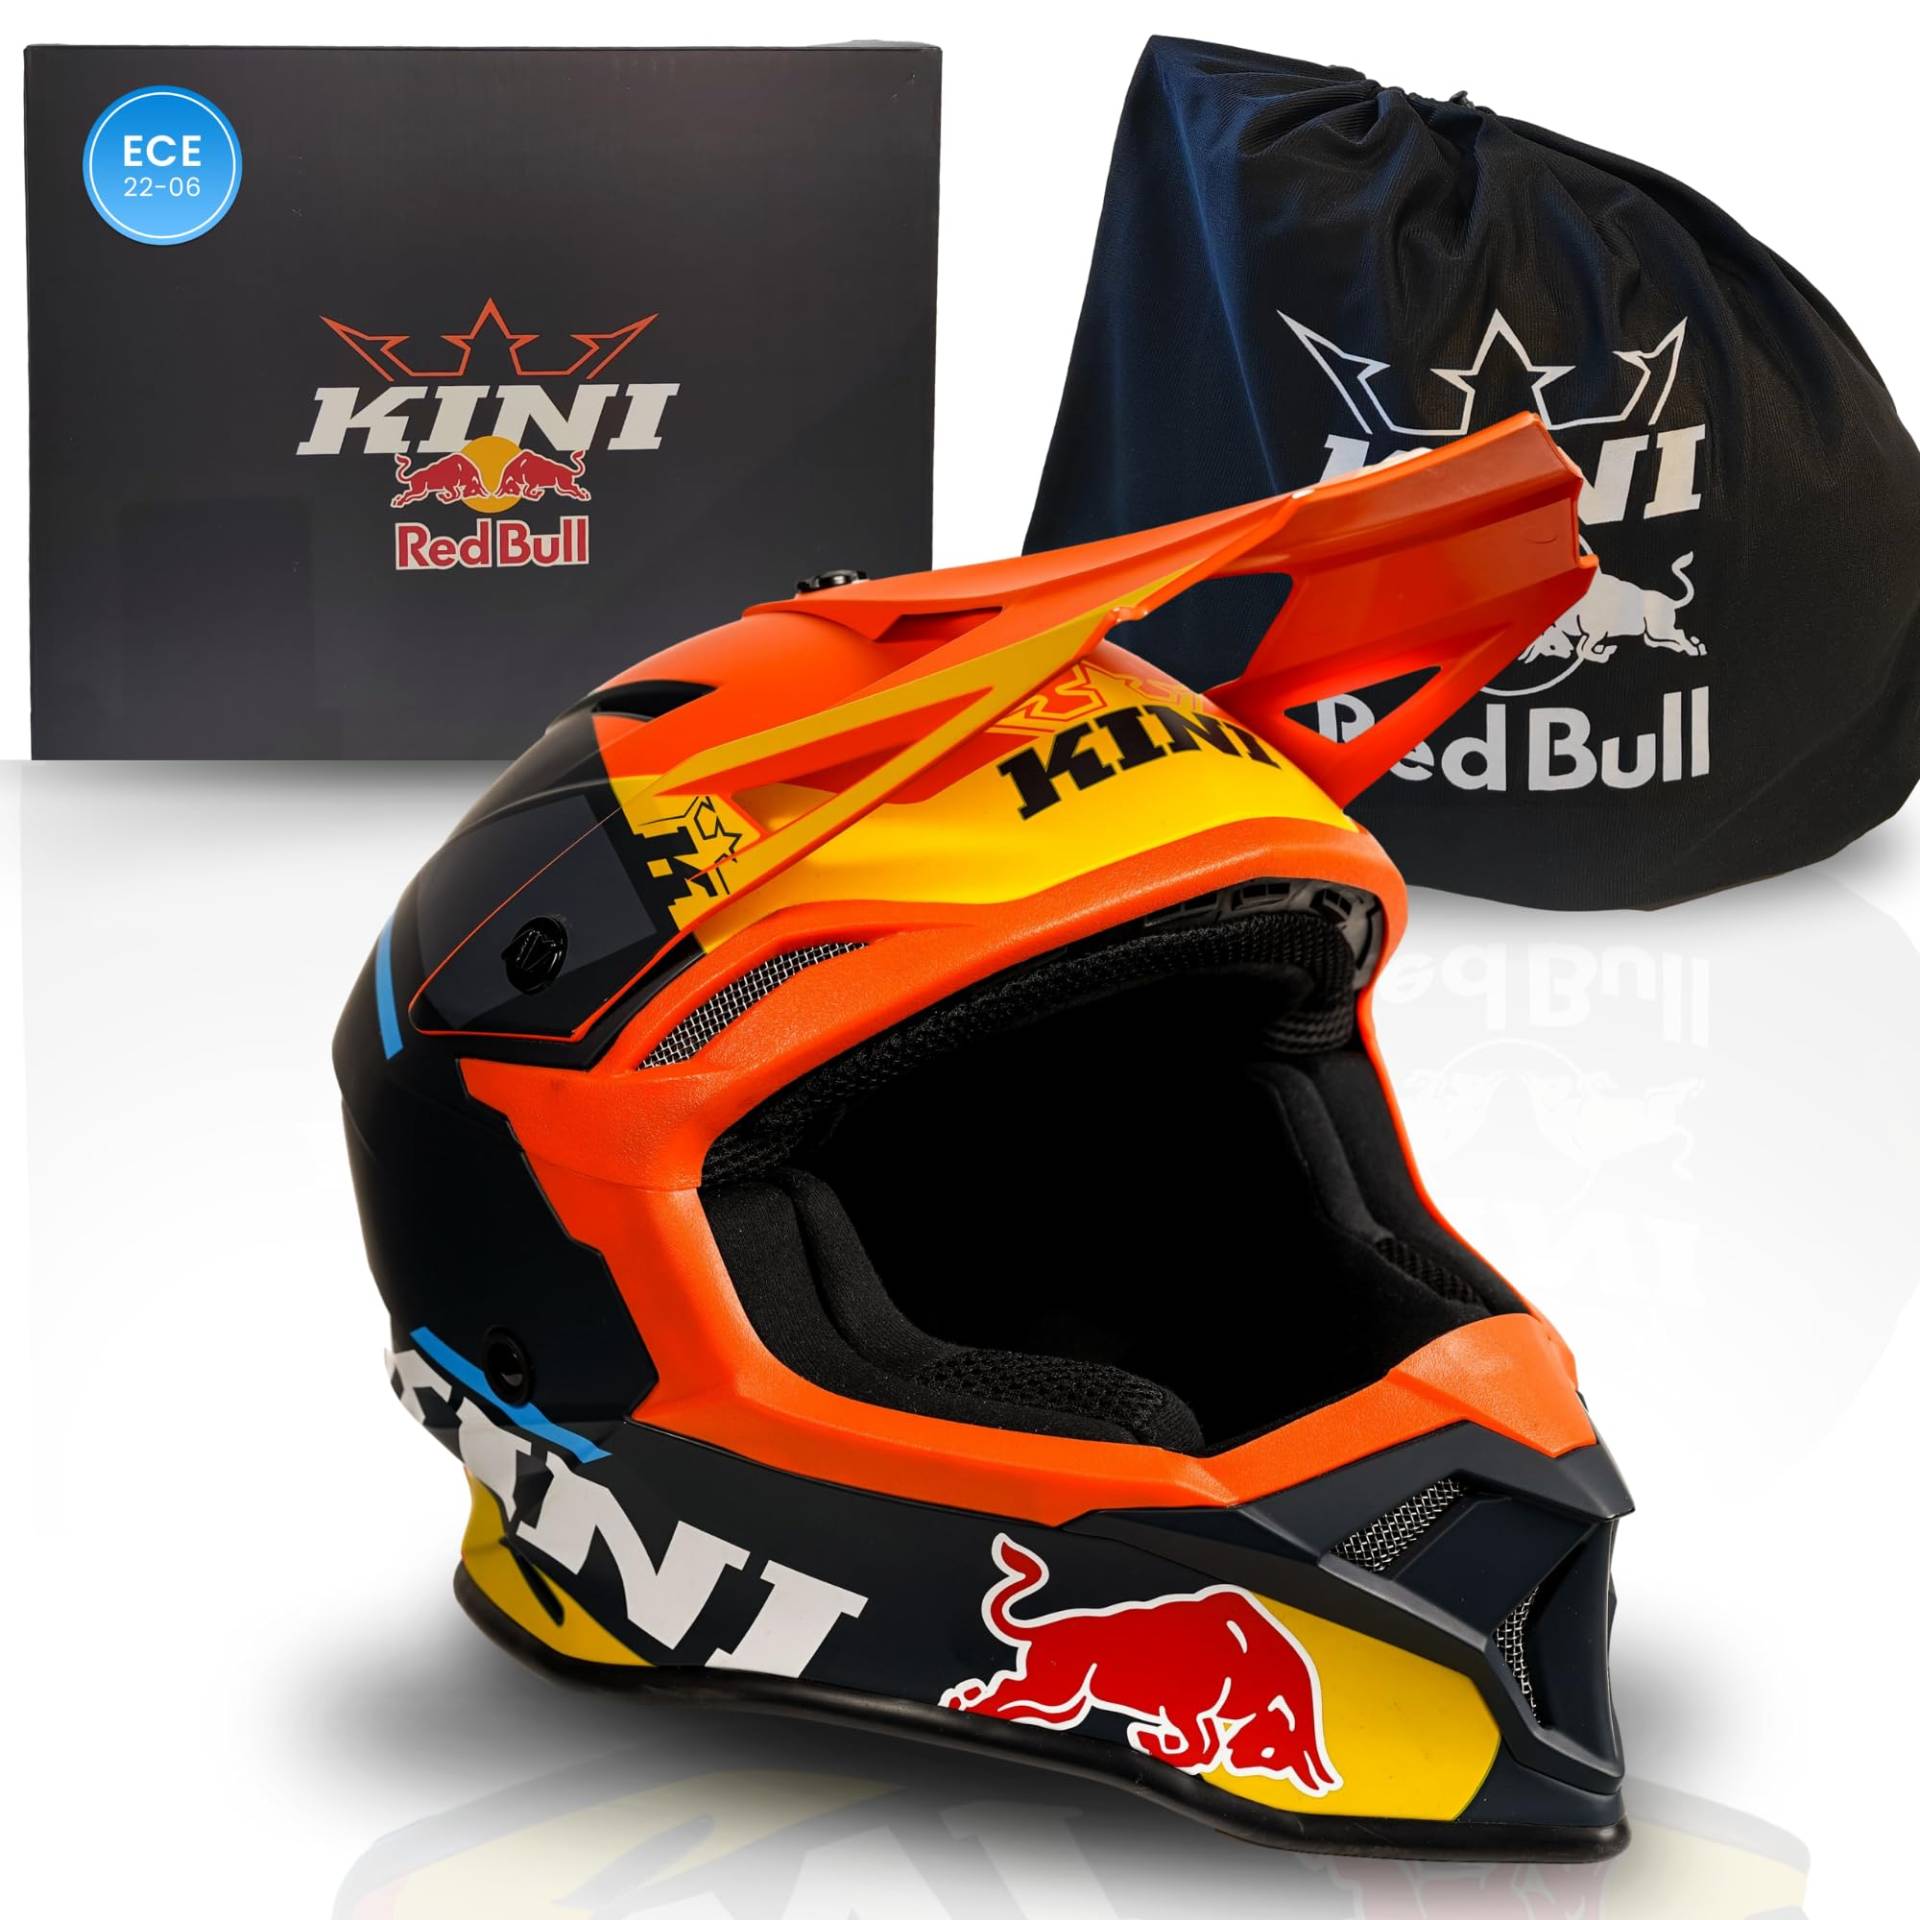 Kini Red Bull Motocross Helm Herren [Premium] Geprüfter Motorradhelm für Renneinsatz - Crosshelm auch als Enduro Helm Downhill Helm einsetzbar - Motocross Helm Brillenträger geeignet (S, Flash Helm) von Kini